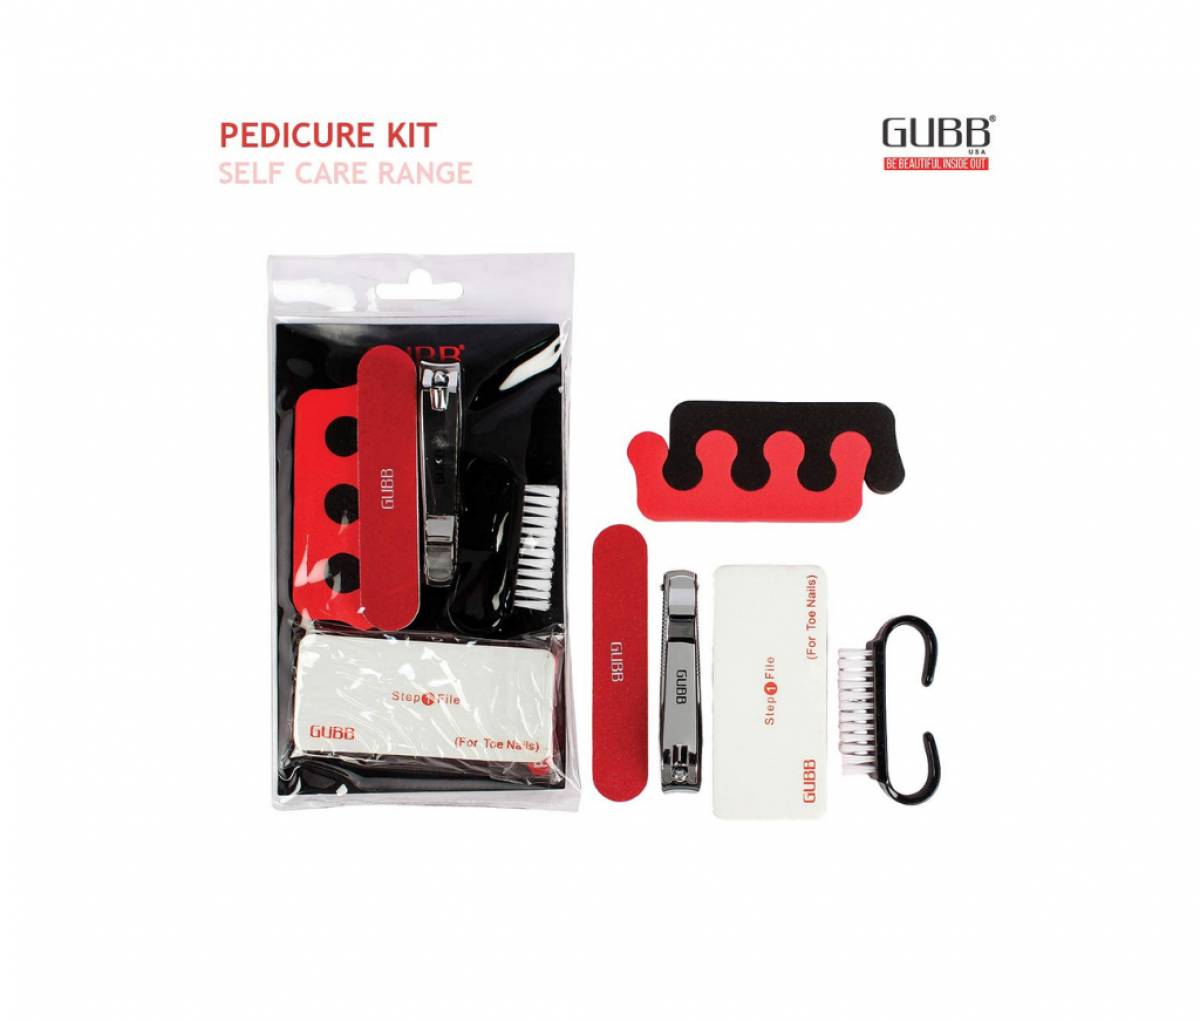 GUBB Pedicure Kit